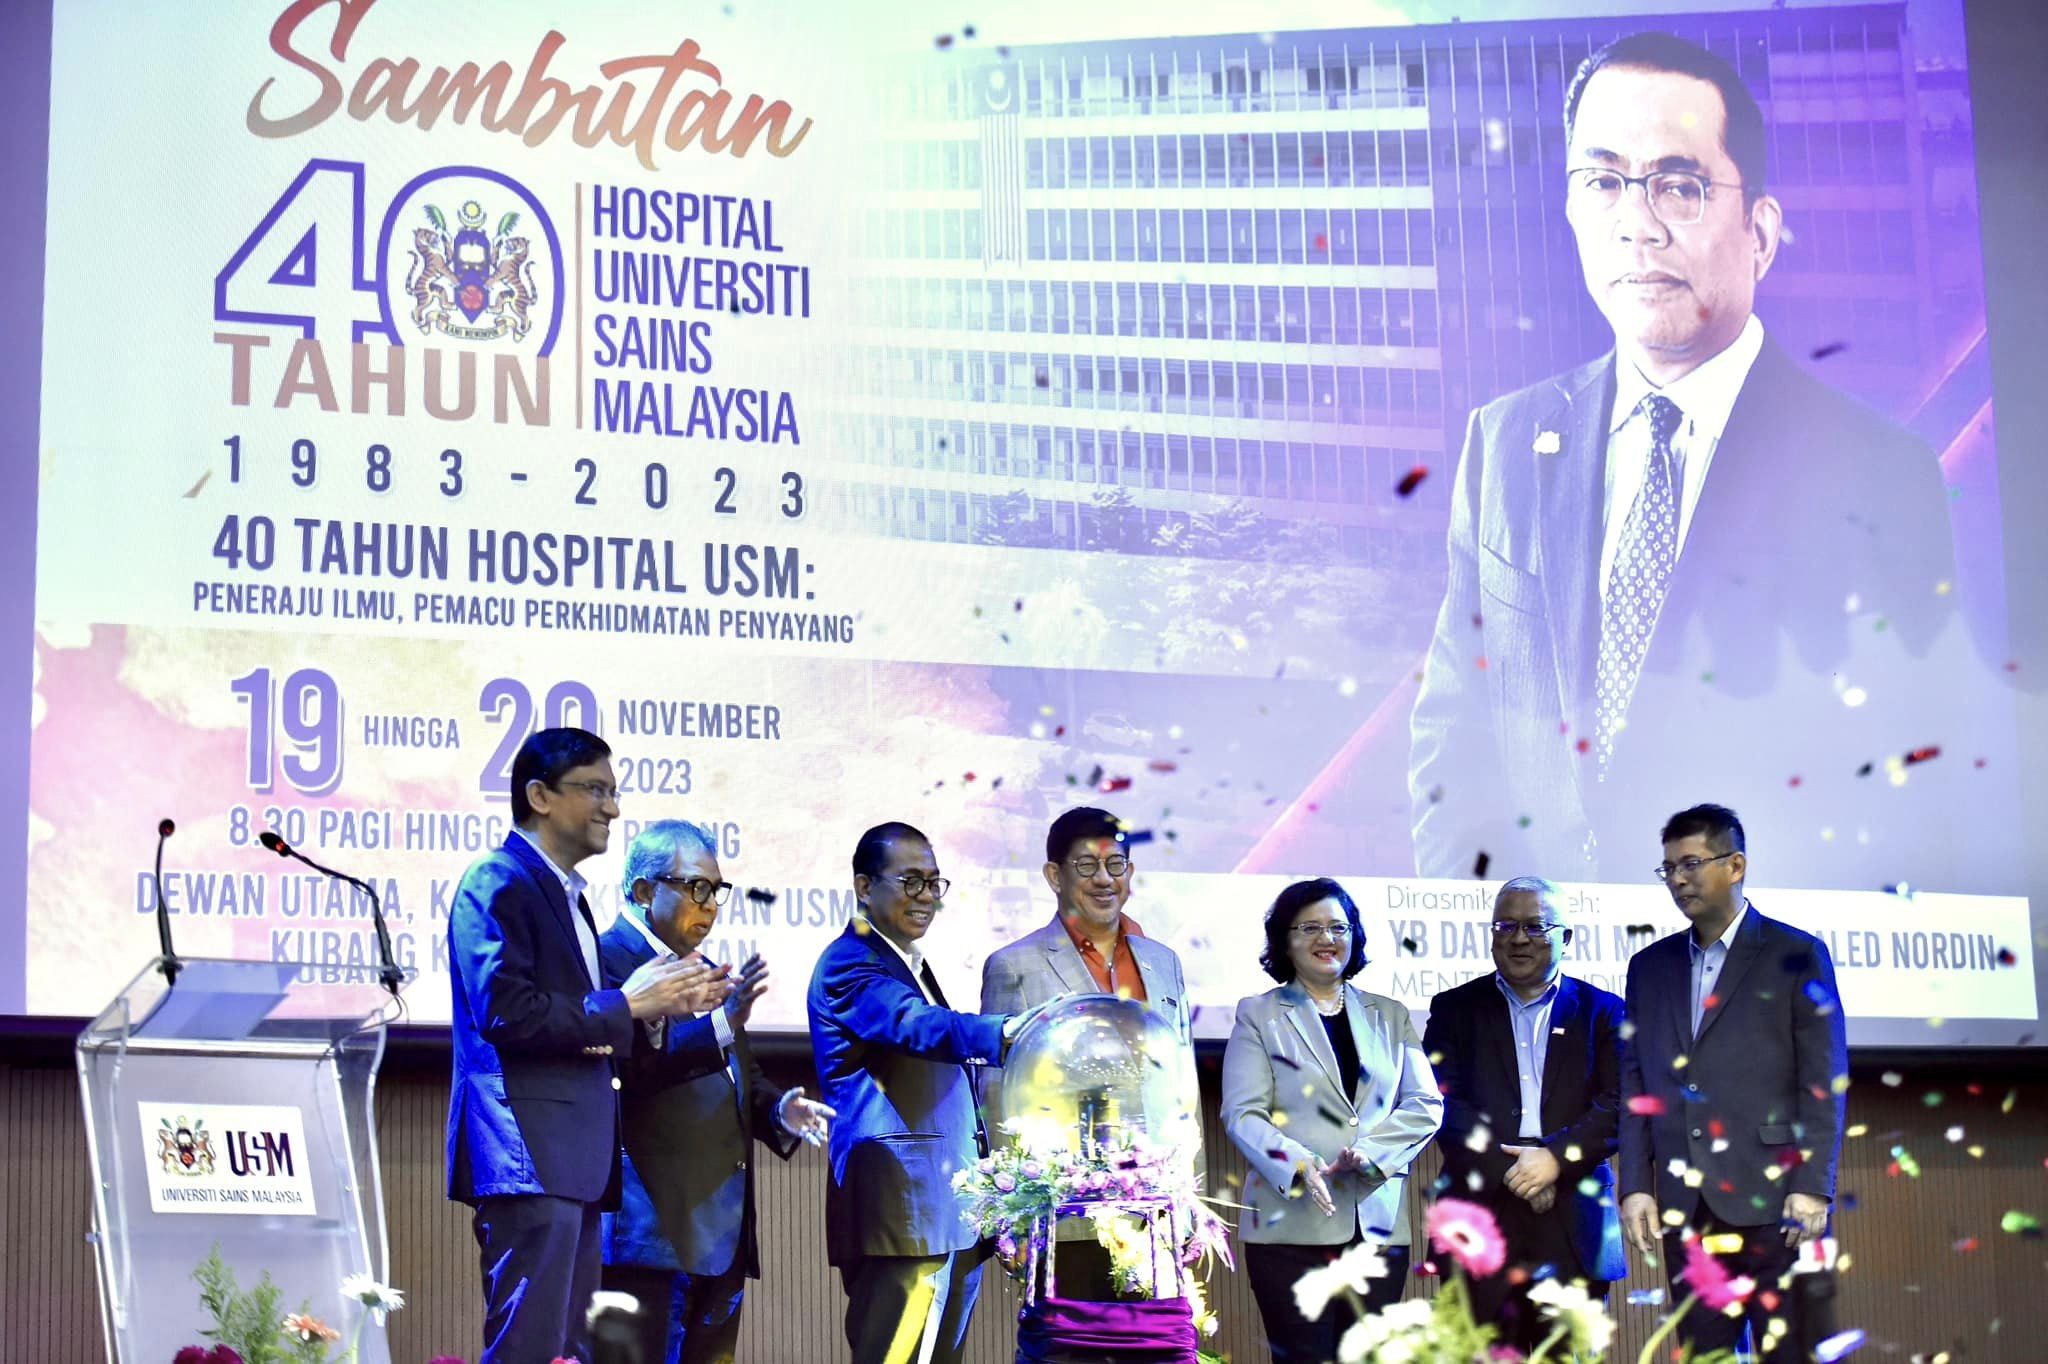 Sambutan 40 Tahun Hospital Universiti Sains Malaysia